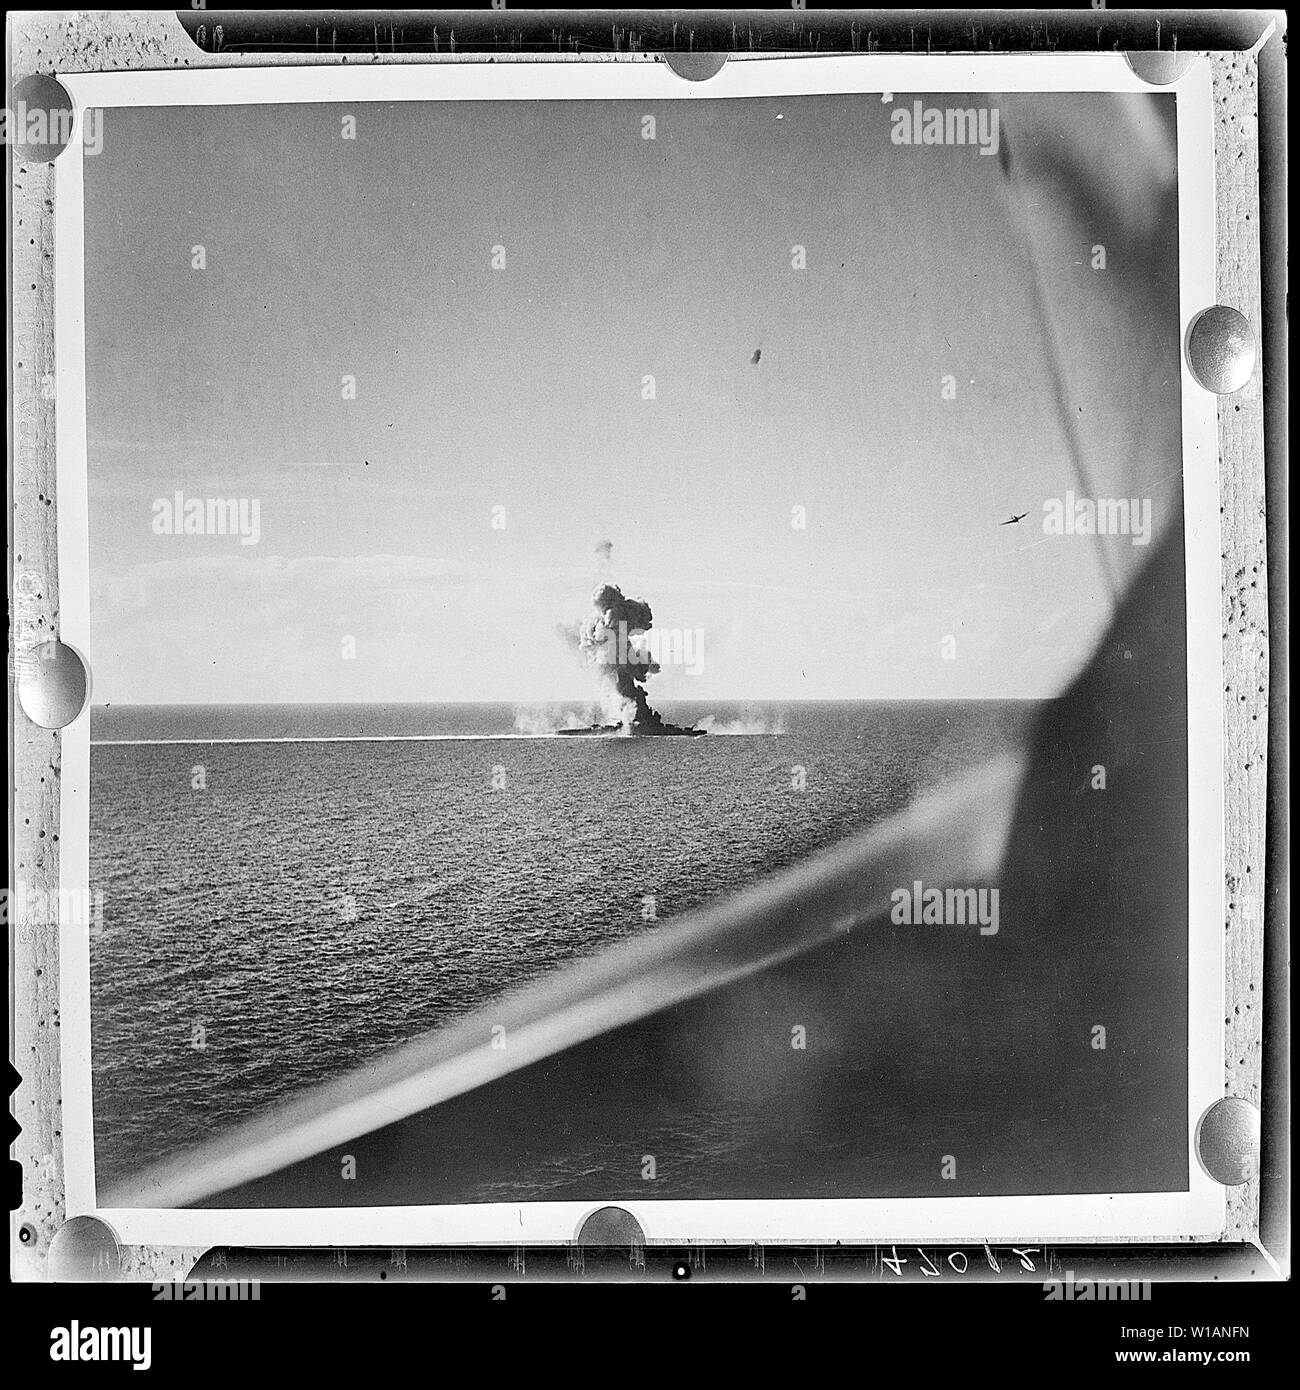 Antenna dell'invasione americana di Engebi isola in Eniwetok atollo. Flares (sinistra) segnale della flotta per il bombardamento di sollevamento in modo che landing craft può grembiale per spiagge.; note generali: La descrizione è ovviamente sbagliato. La foto mostra una nave da guerra giapponese (un cruiser?) sotto attacco: un giapponese Mogami-class cruiser sotto attacco da parte degli Stati Uniti Navy di Carrier aria Gruppo 7 (CVG-7) in seguito alla battaglia di Leyte Golfo, 26 ottobre 1944. Un Curtiss SB2C-3 Helldiver di bombardamenti Squadron 7 (VB-7) è visibile in alto a destra della fotografia. La cruiser è più probabilmente Kumano che aveva la prua è stata soffiata da un siluro l Foto Stock